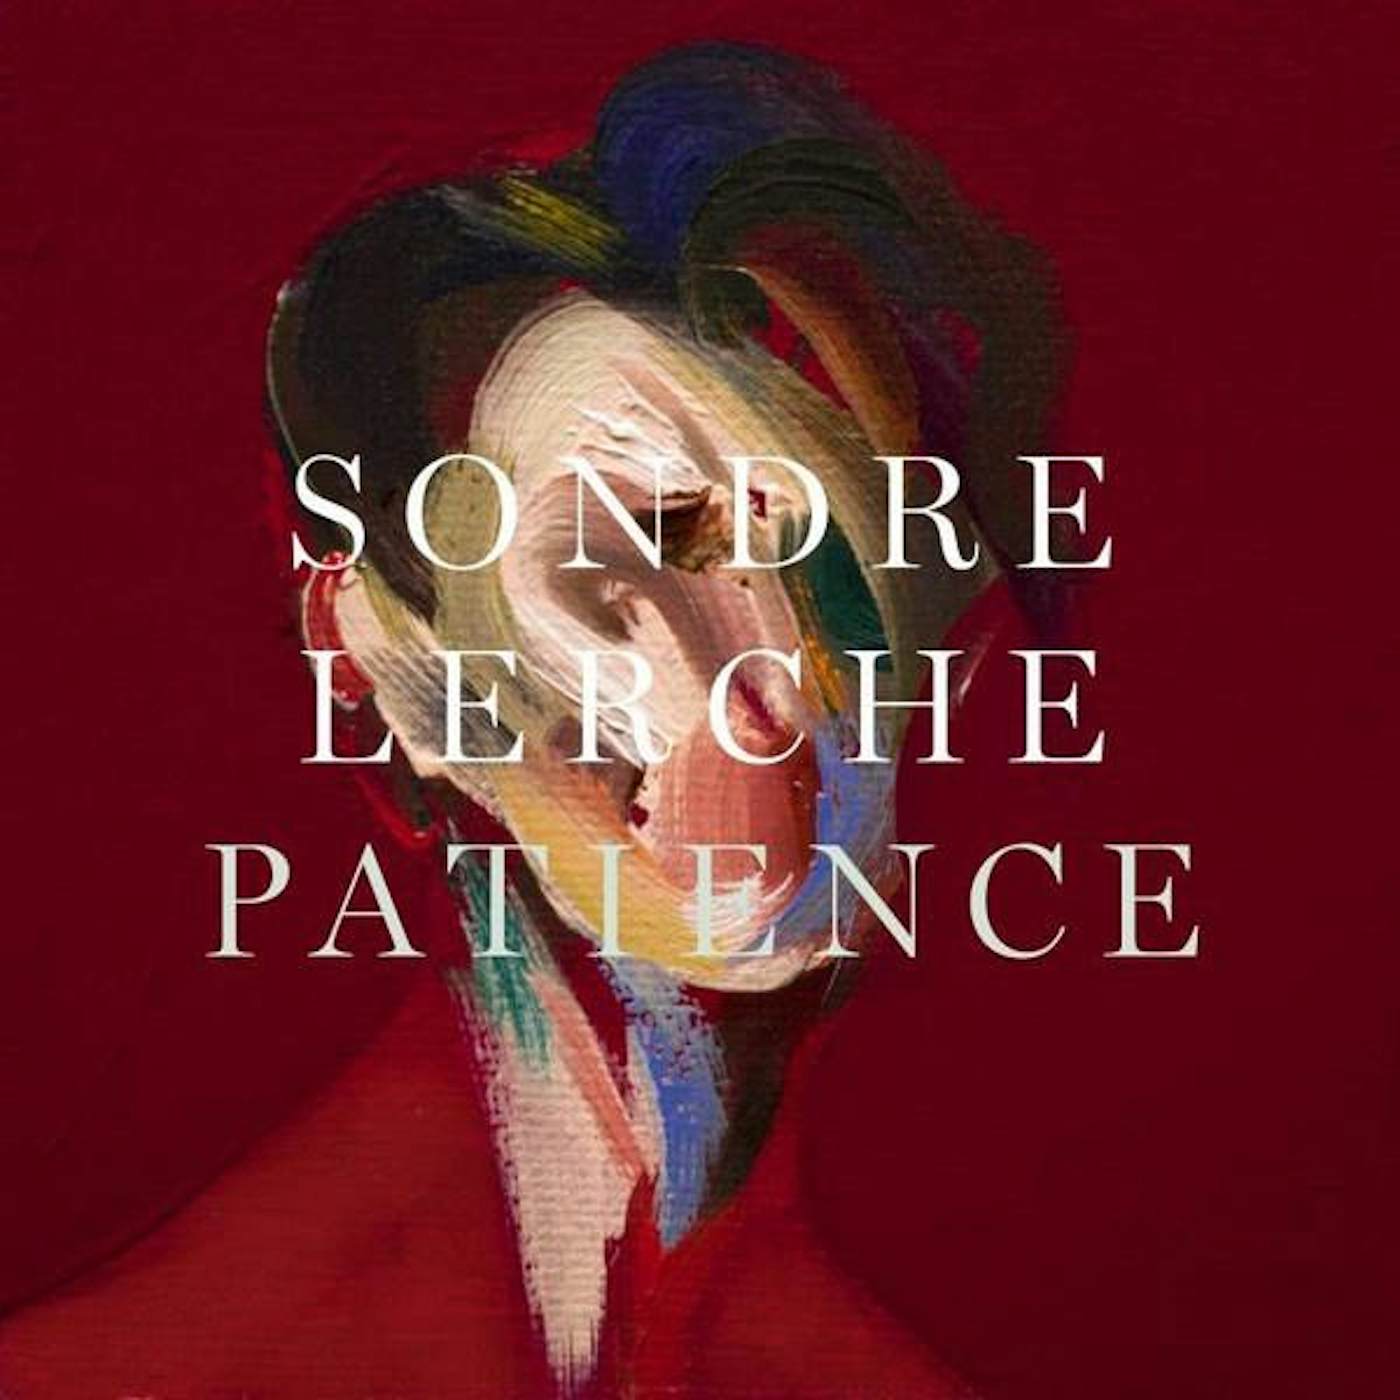 Sondre Lerche Patience Vinyl Record